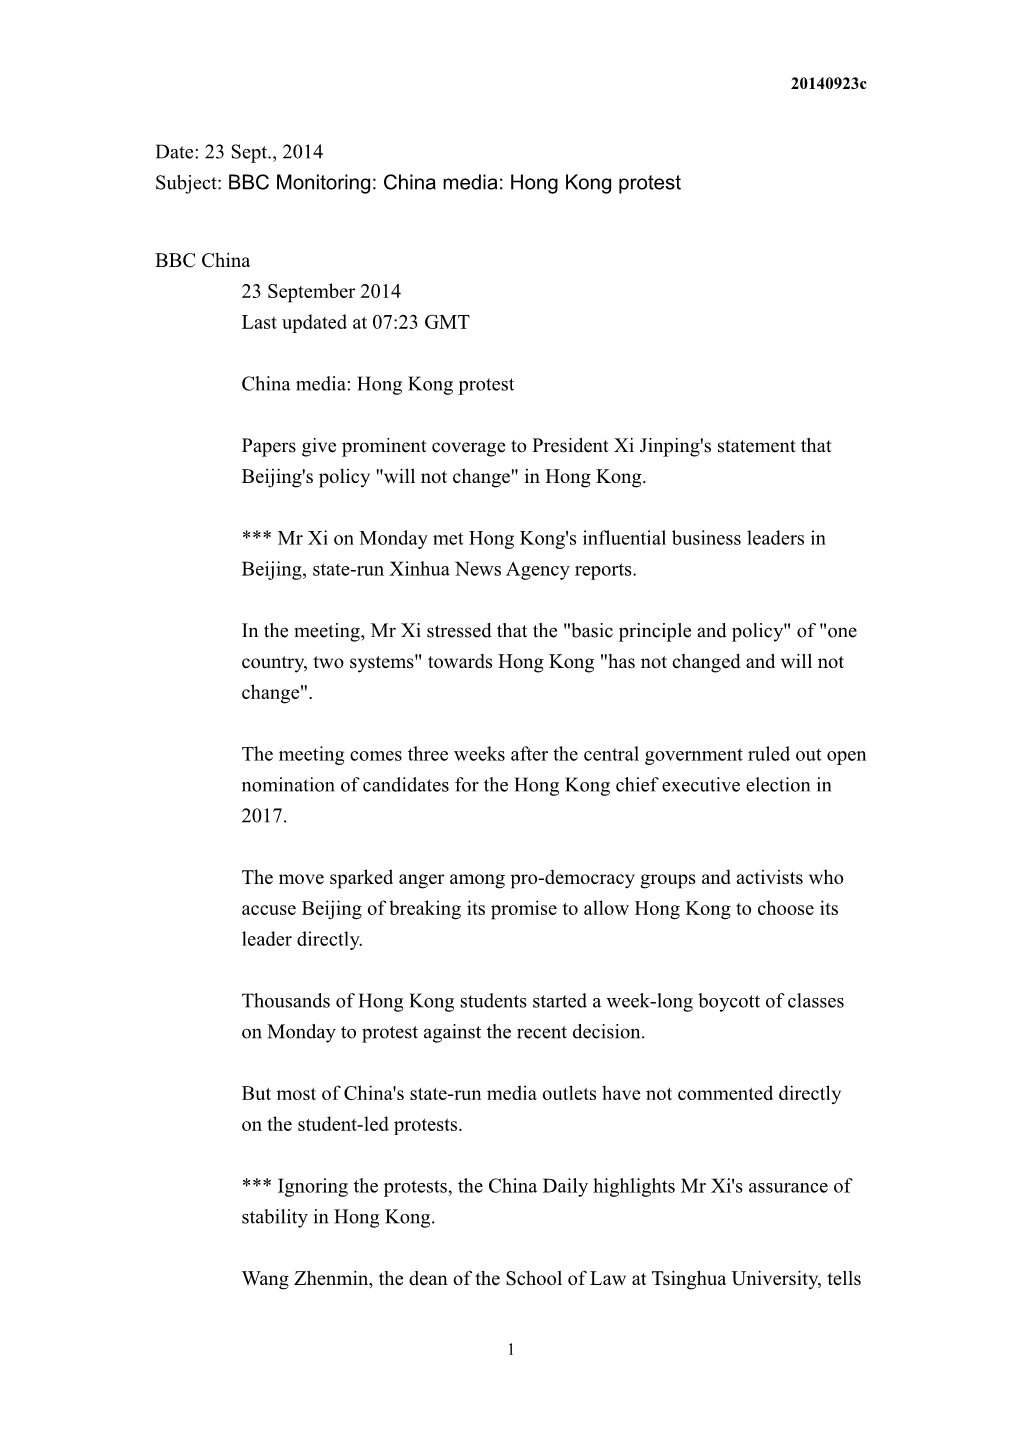 Subject: BBC Monitoring: China Media: Hong Kong Protest